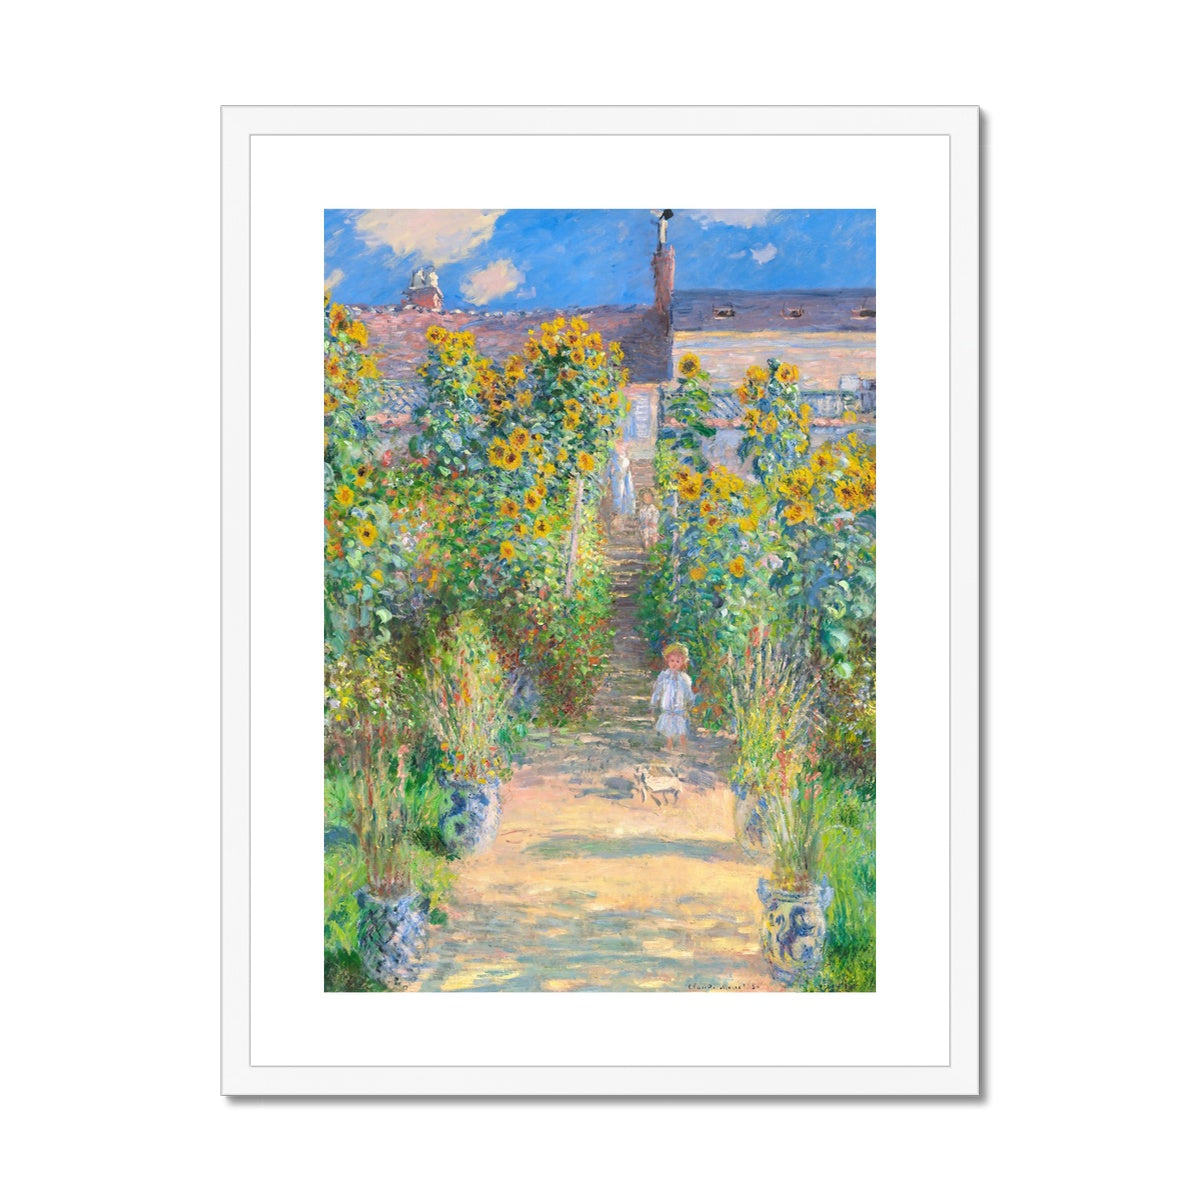 Claude Monet Framed Open Edition Art Print. &#39;The Artist&#39;s Garden at Vétheuil&#39;. Art Gallery Historic Art